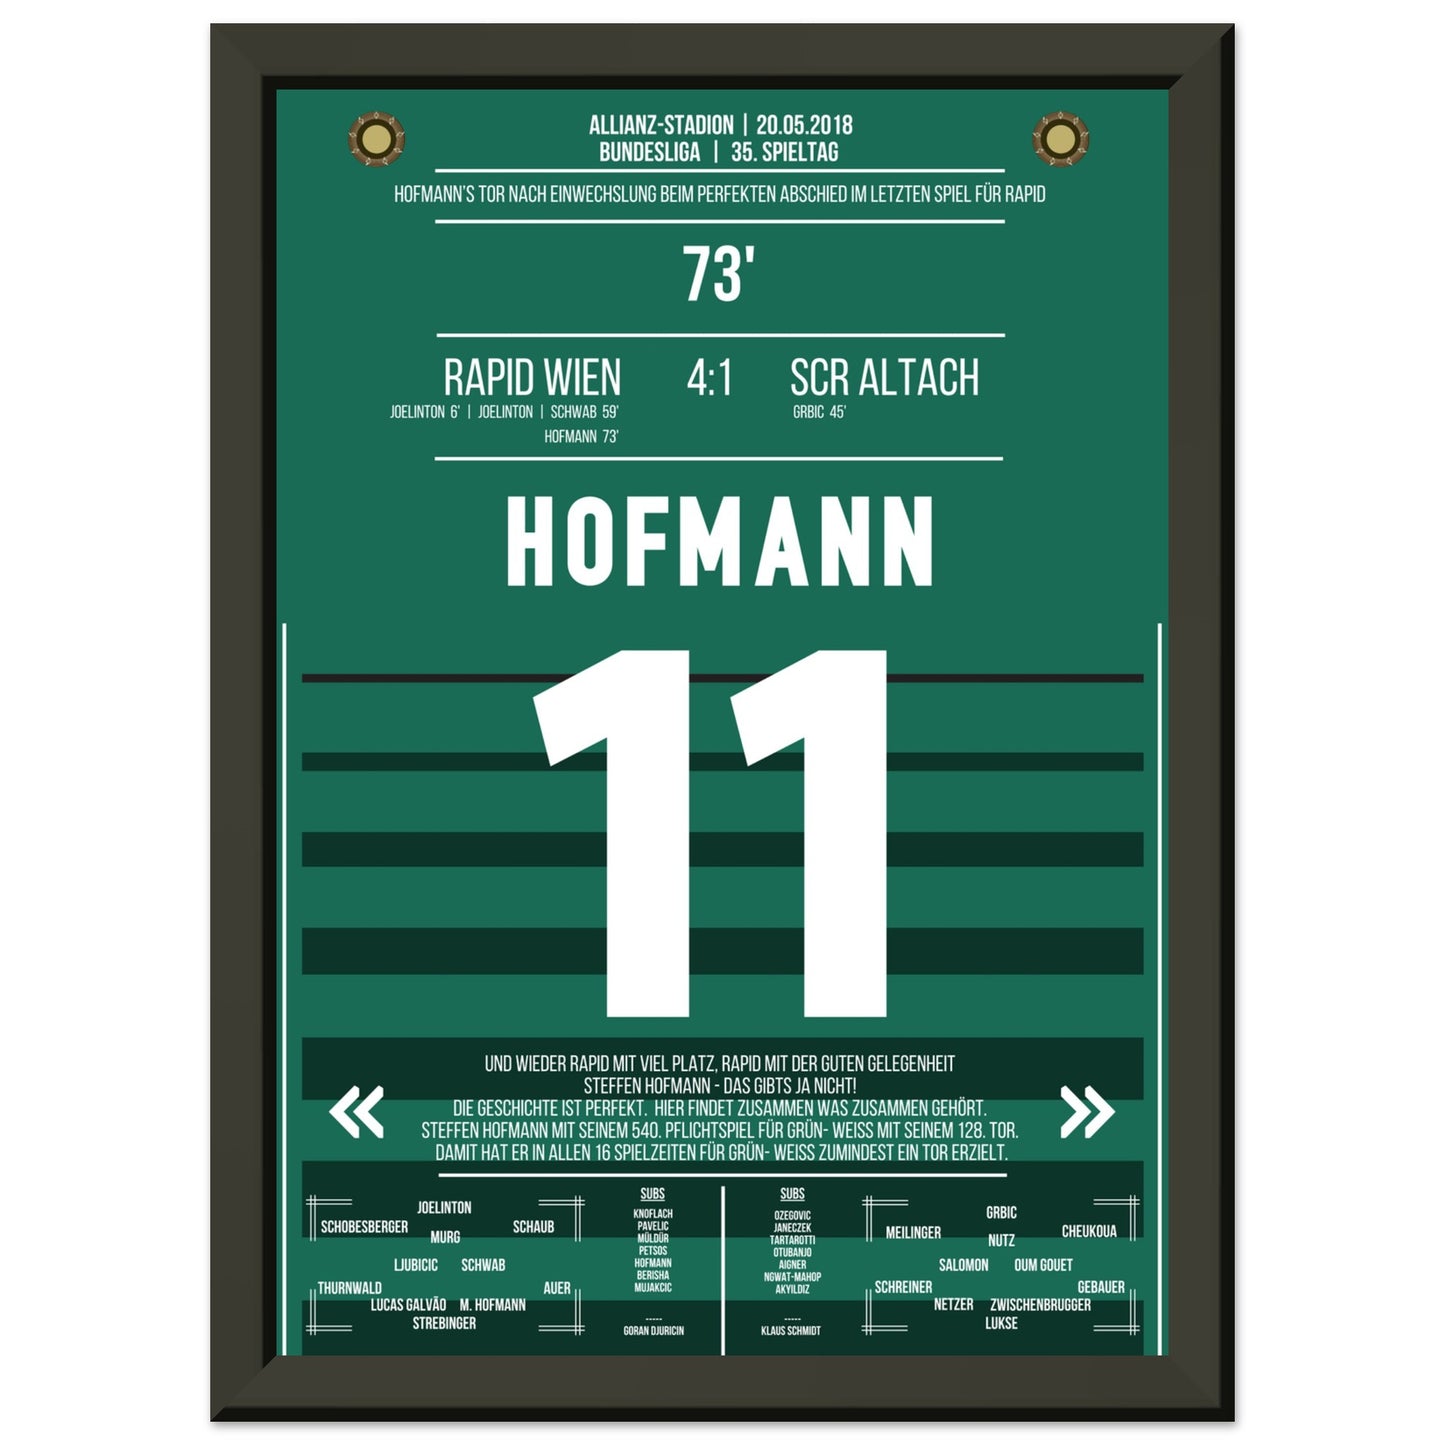 Hofmann's perfekter Abschied im letzten Spiel für Rapid A4-21x29.7-cm-8x12-Schwarzer-Aluminiumrahmen